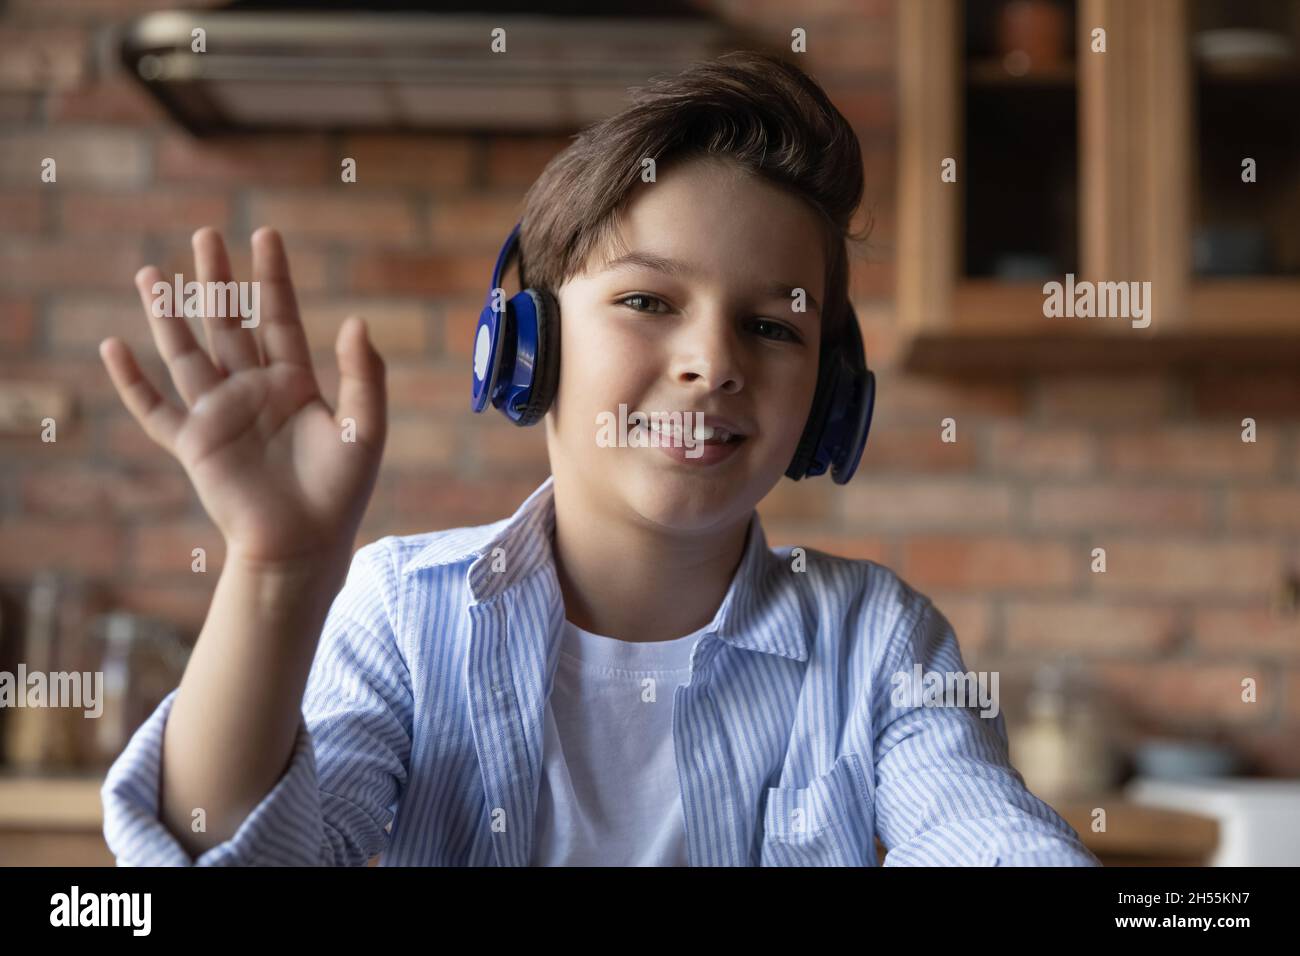 Junior school age boy in headphones wave hand to webcam Stock Photo